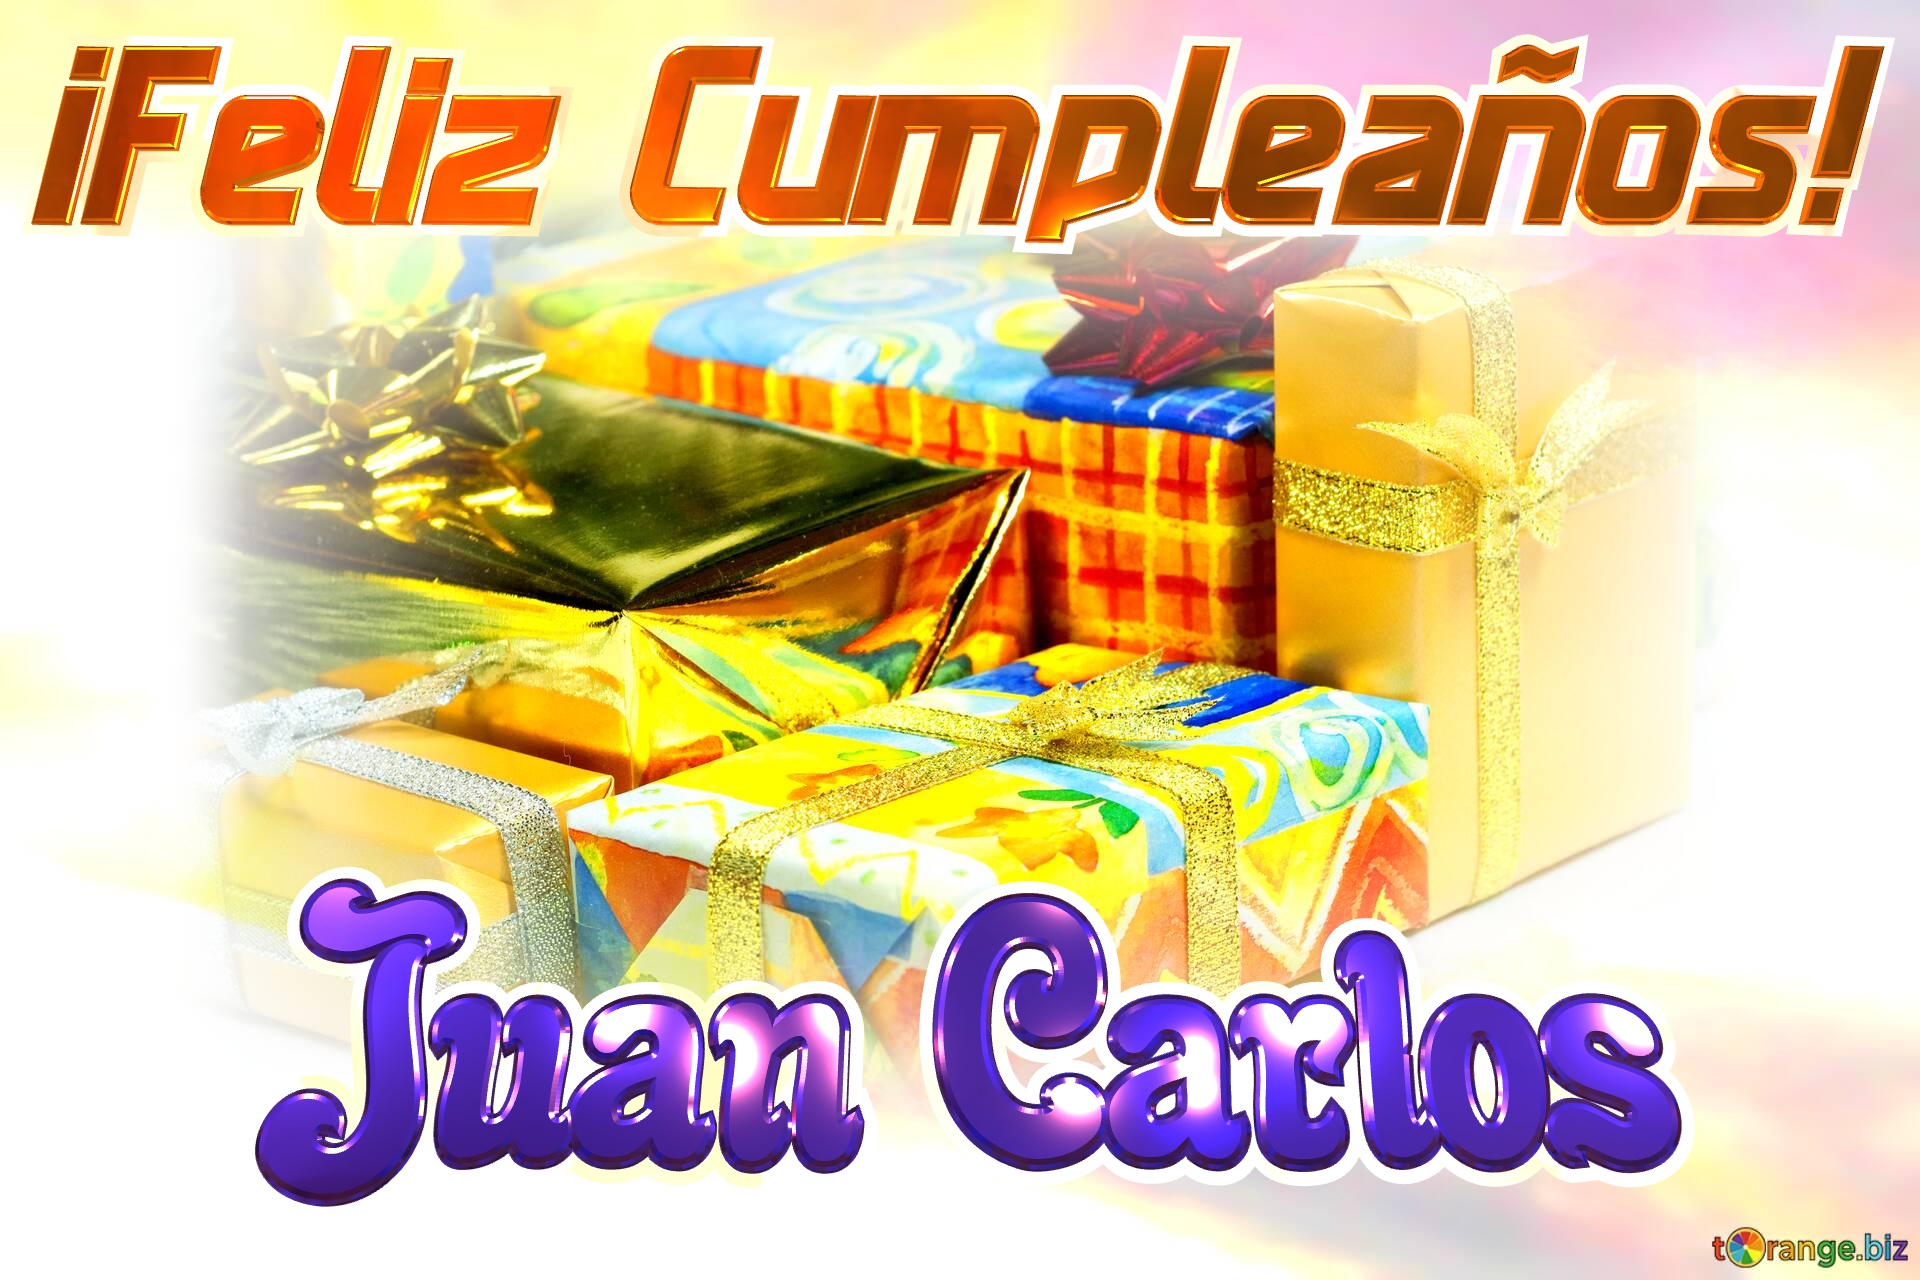 ¡Feliz Cumpleaños! Juan Carlos  fondo  galo №0